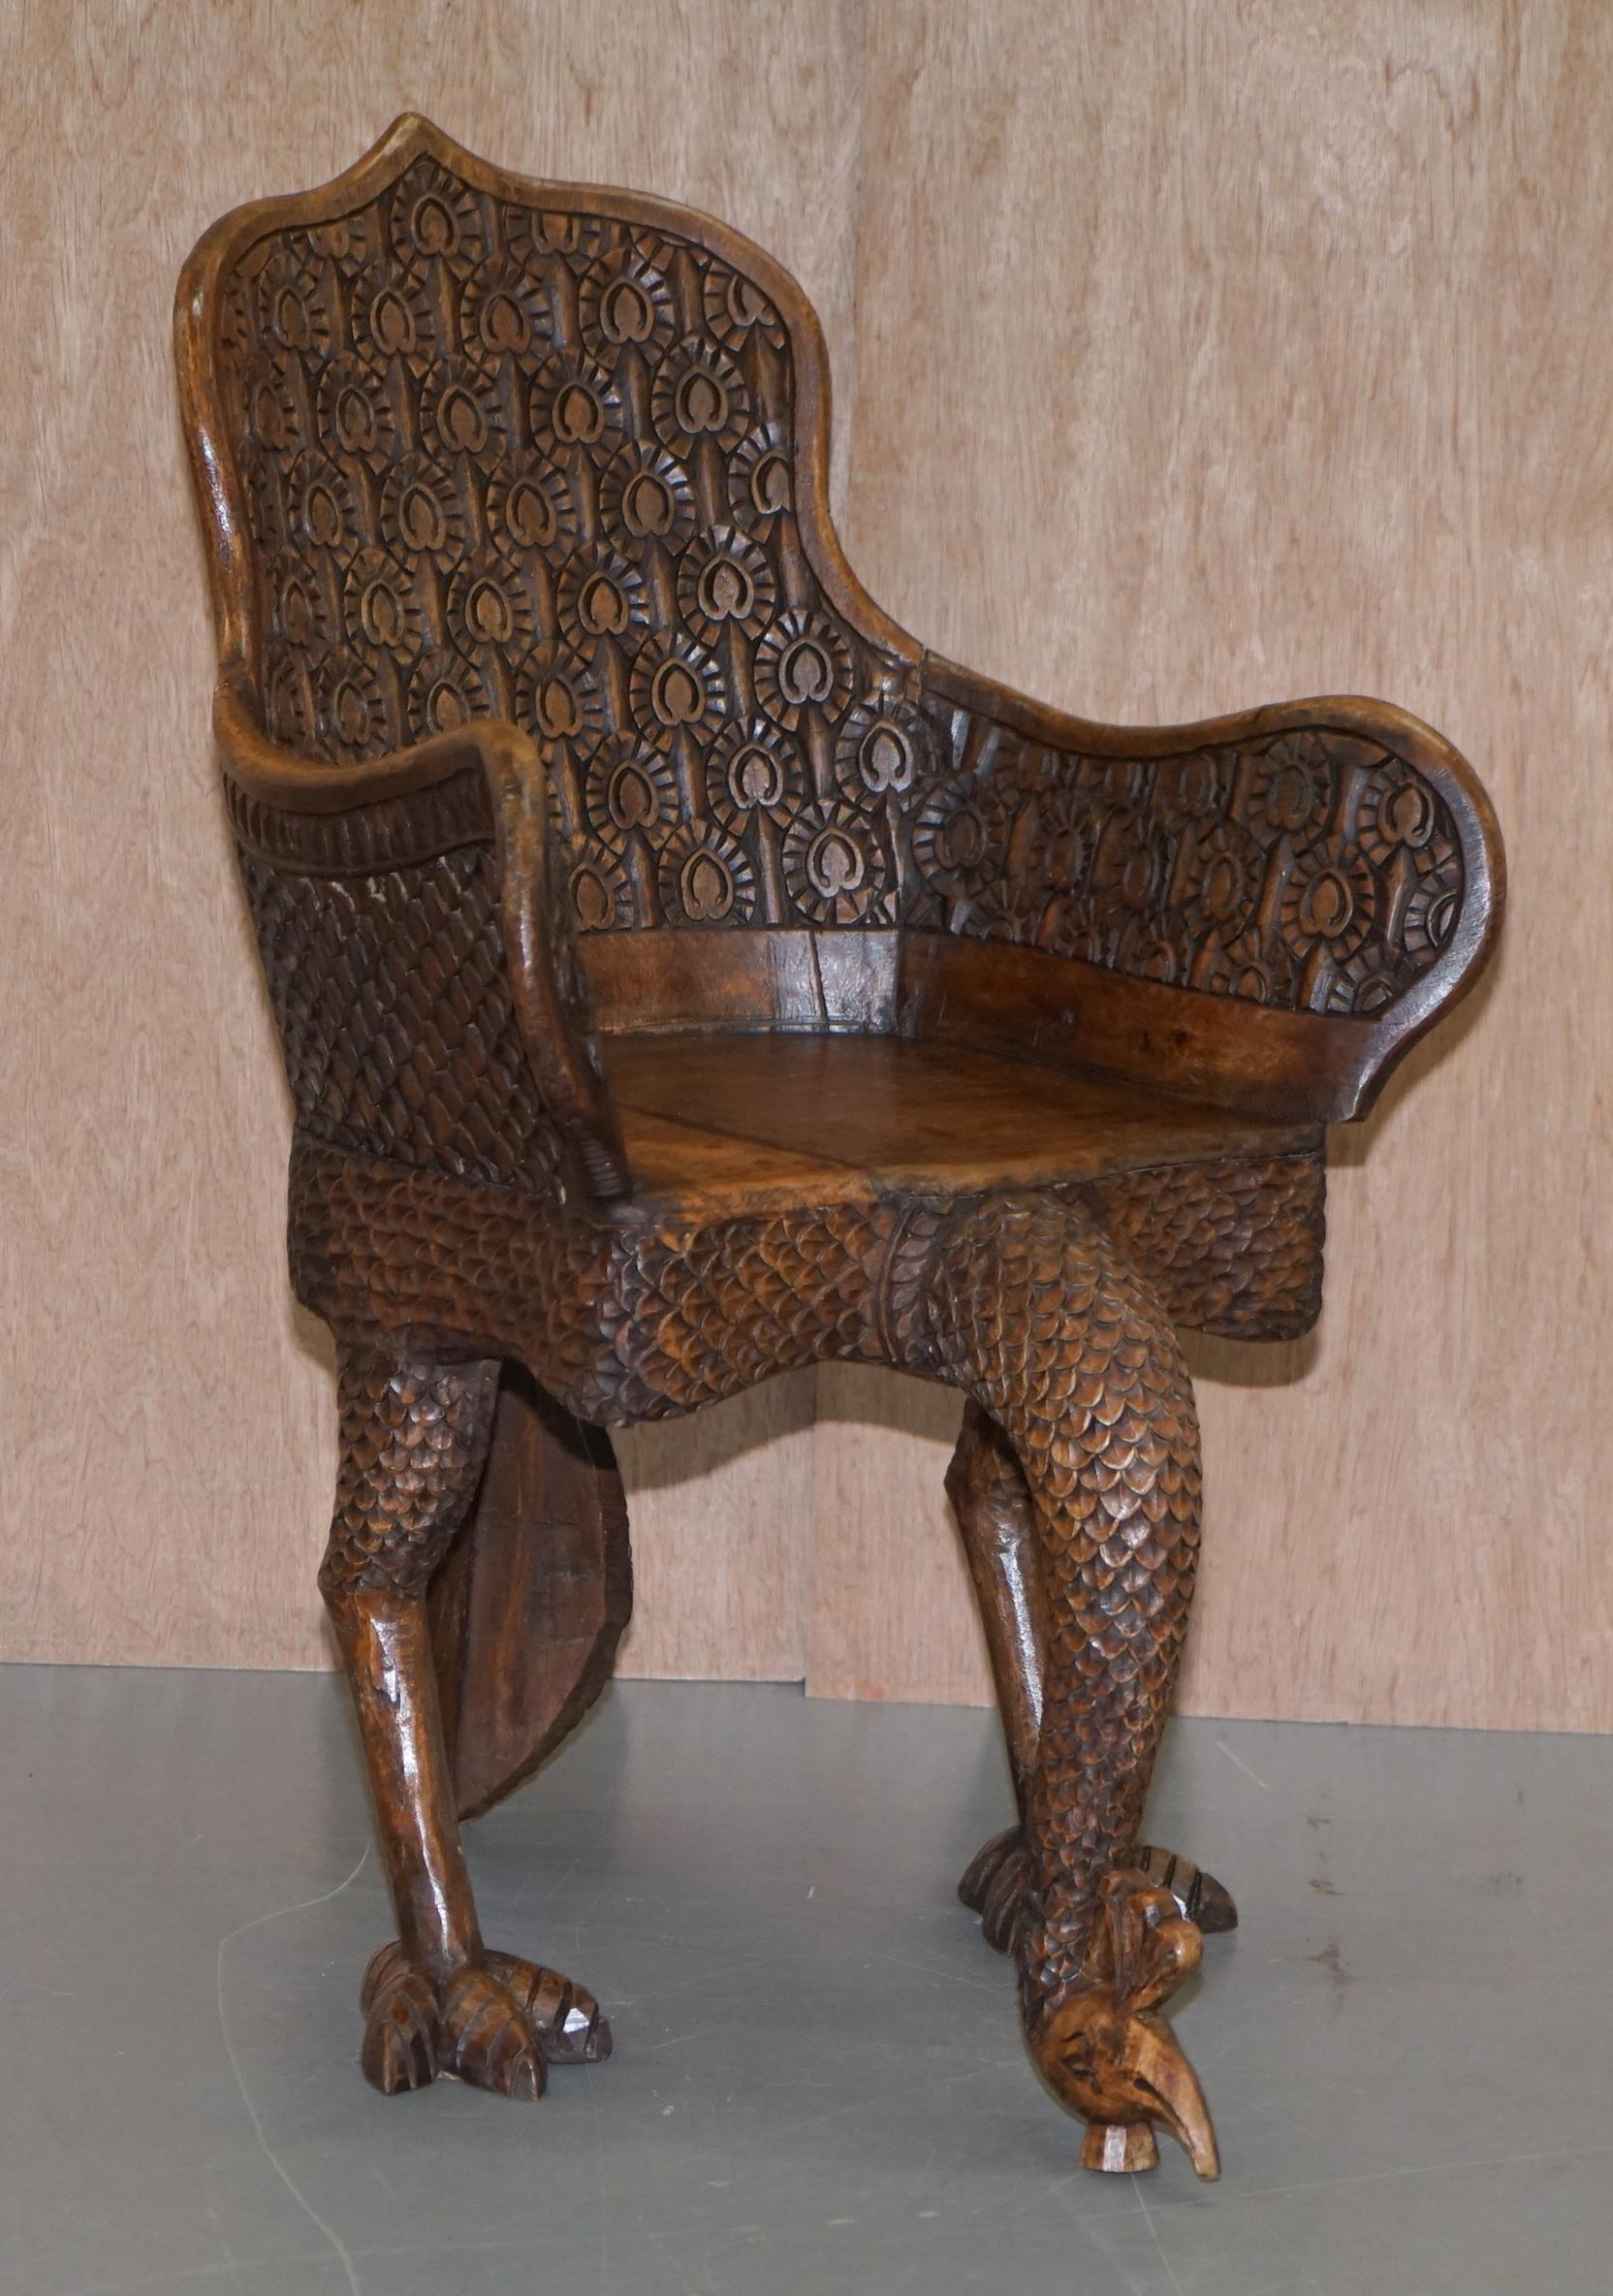 Nous sommes ravis d'offrir à la vente cette belle paire de fauteuils de paon birmans anglo-indiens extrêmement ornés et sculptés à la main

Que puis-je dire, ce sont les chaises les plus décoratives que j'aie jamais vues. Ils sont une merveilleuse